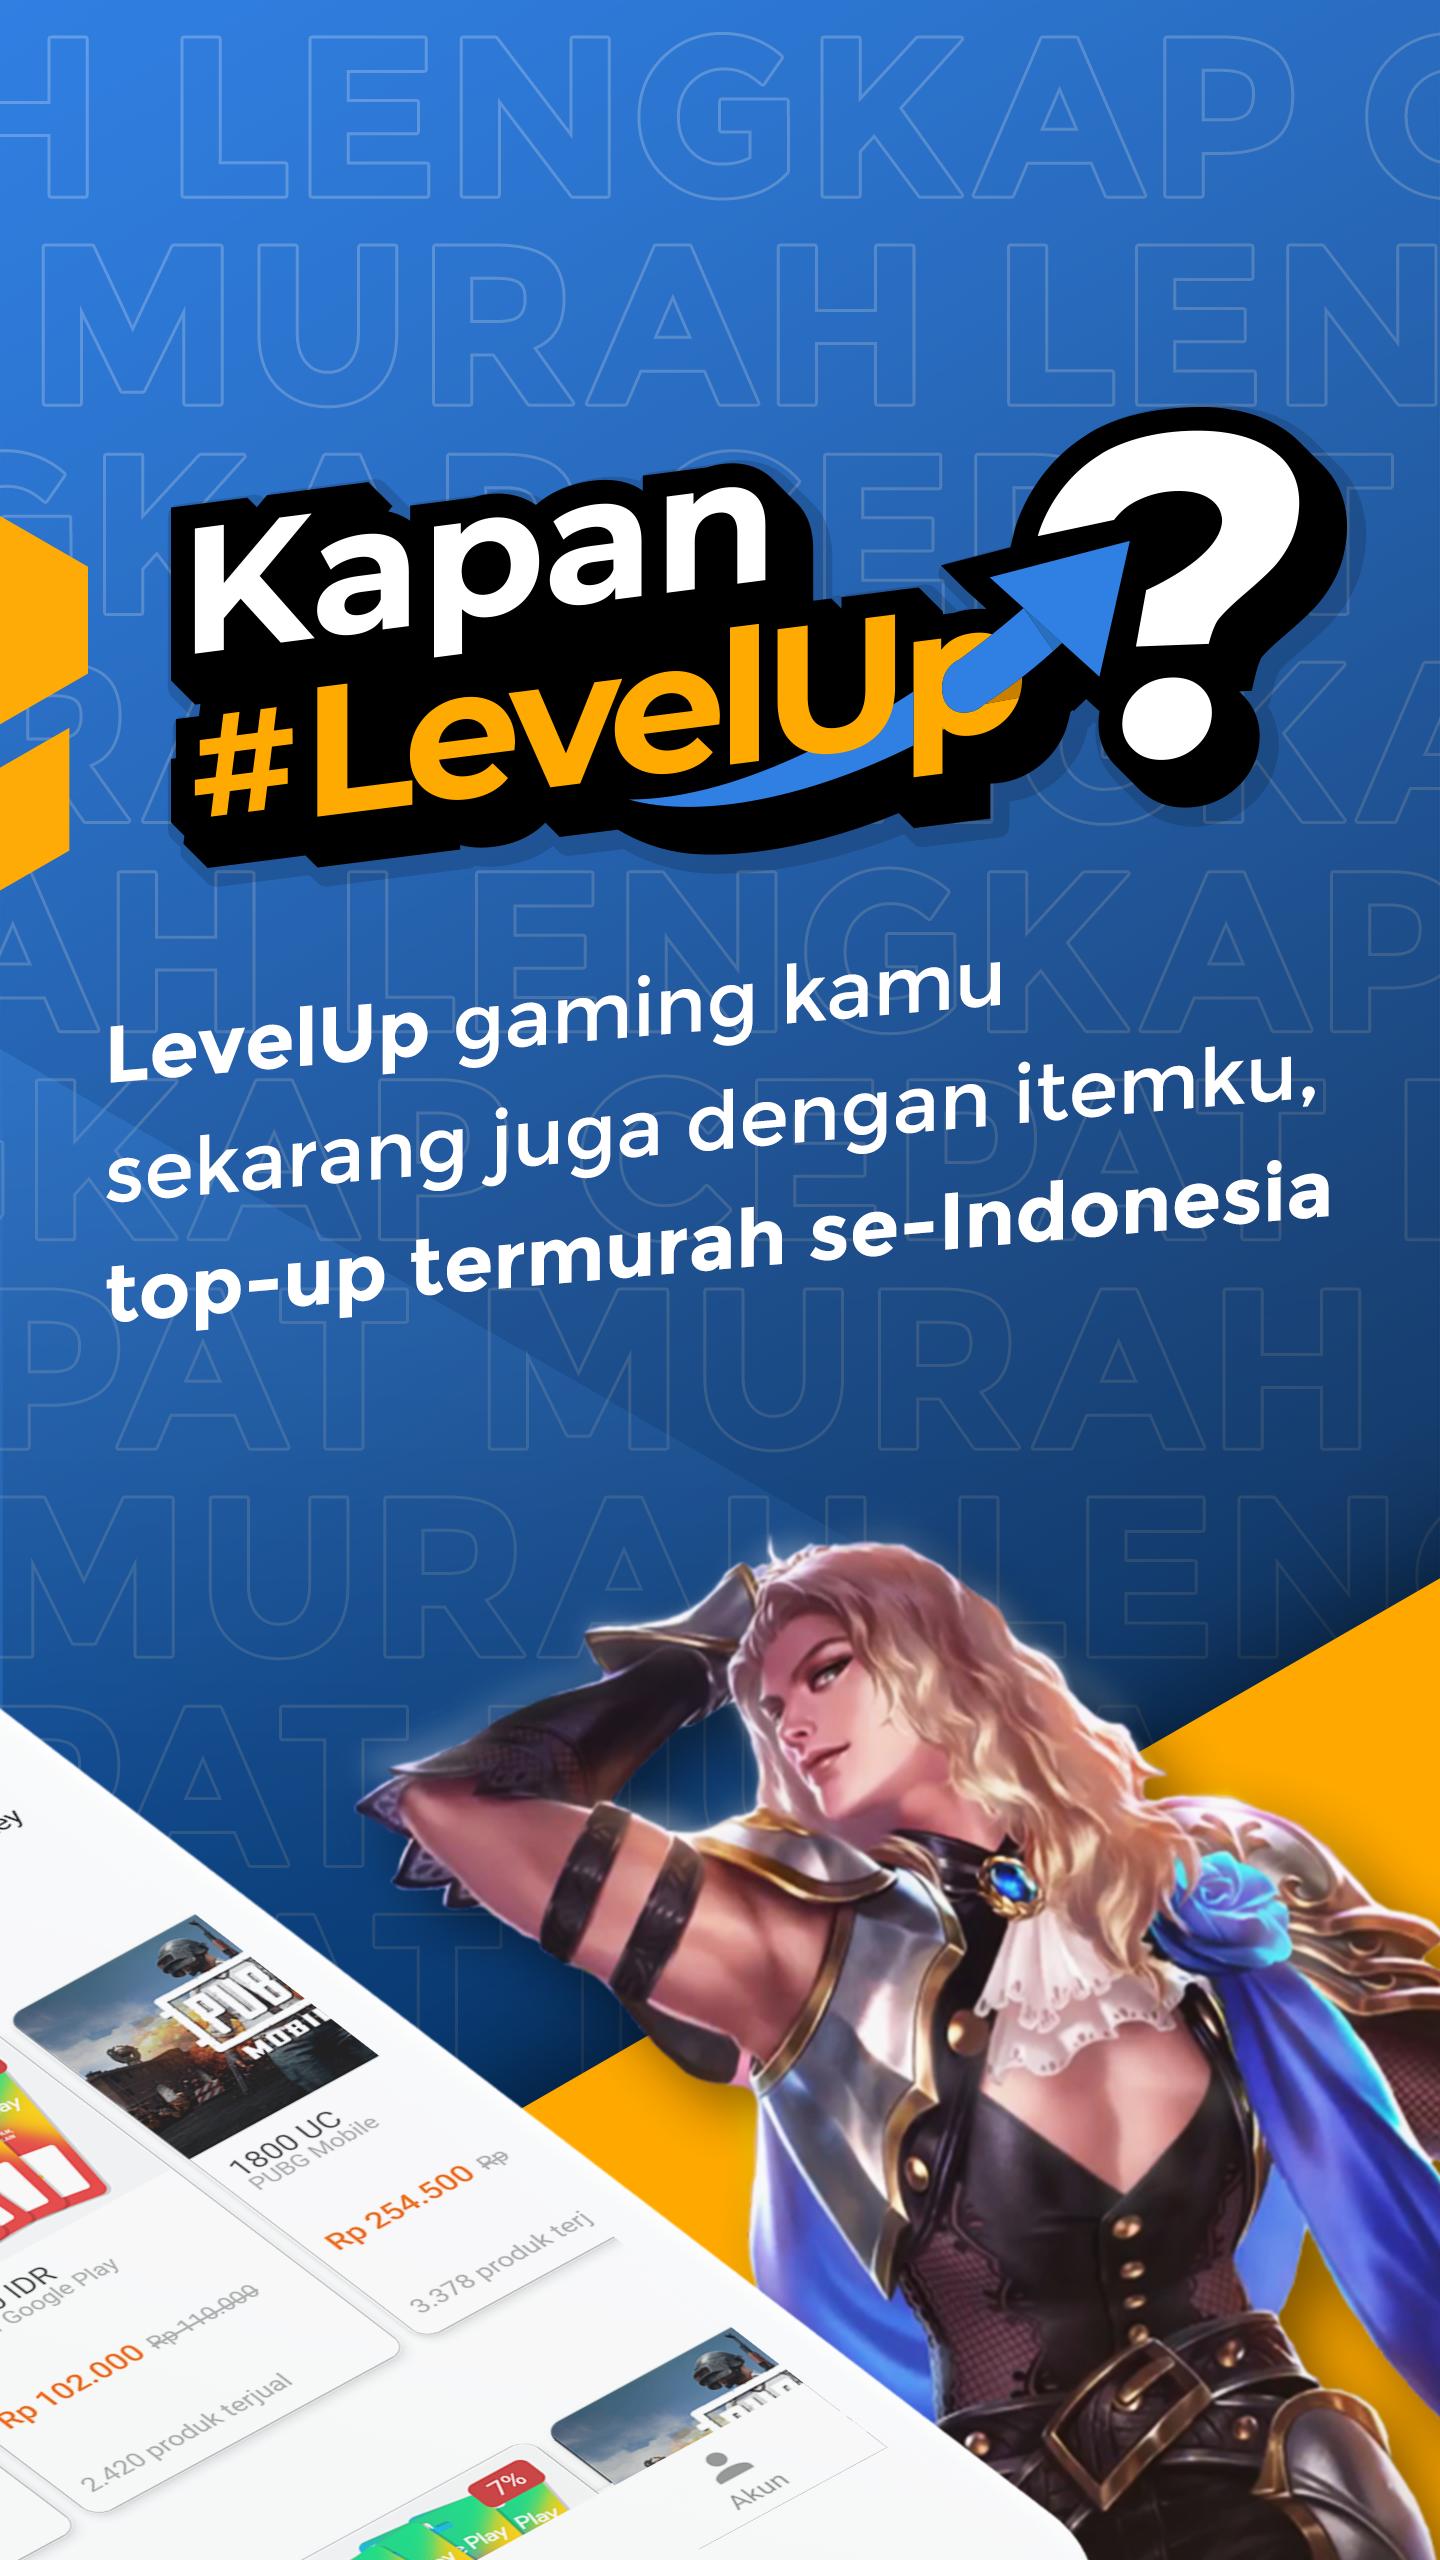 itemku - Top-up Game Termurah se-Indonesia 3.11.3 Screenshot 2